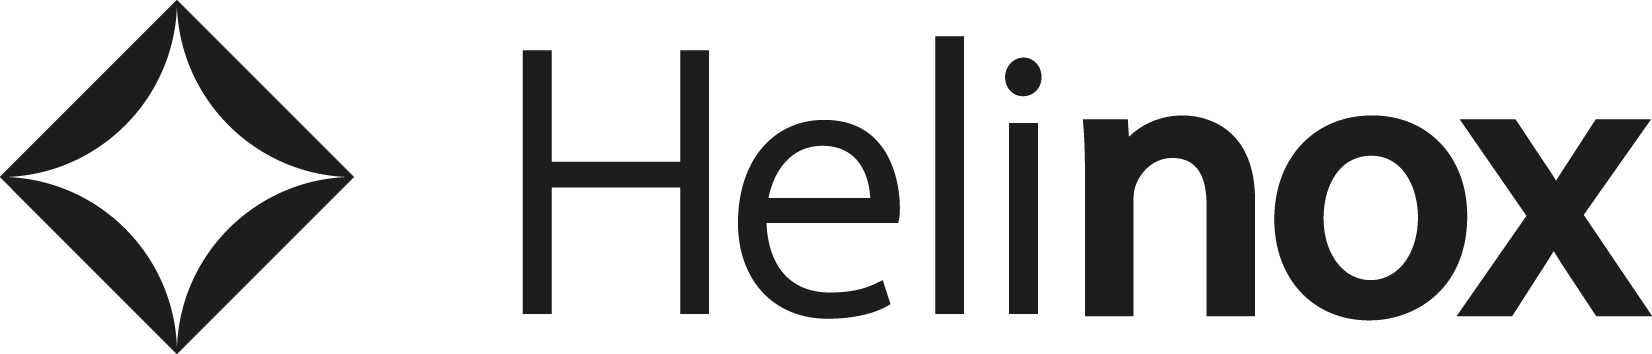 Helinoxl Logo